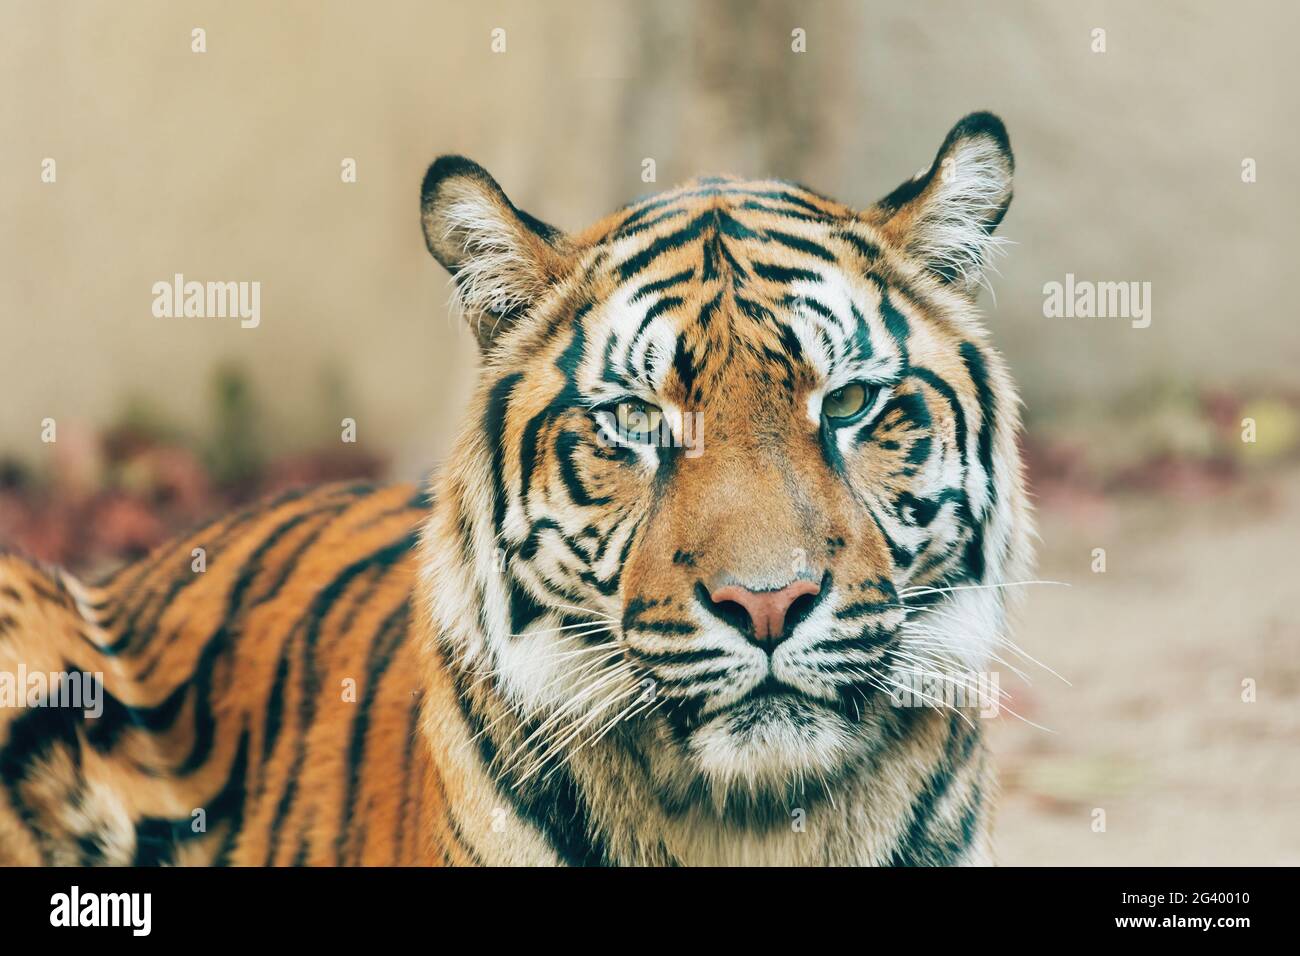 Sumatran Tiger, Panthera tigris sumatrae Stock Photo